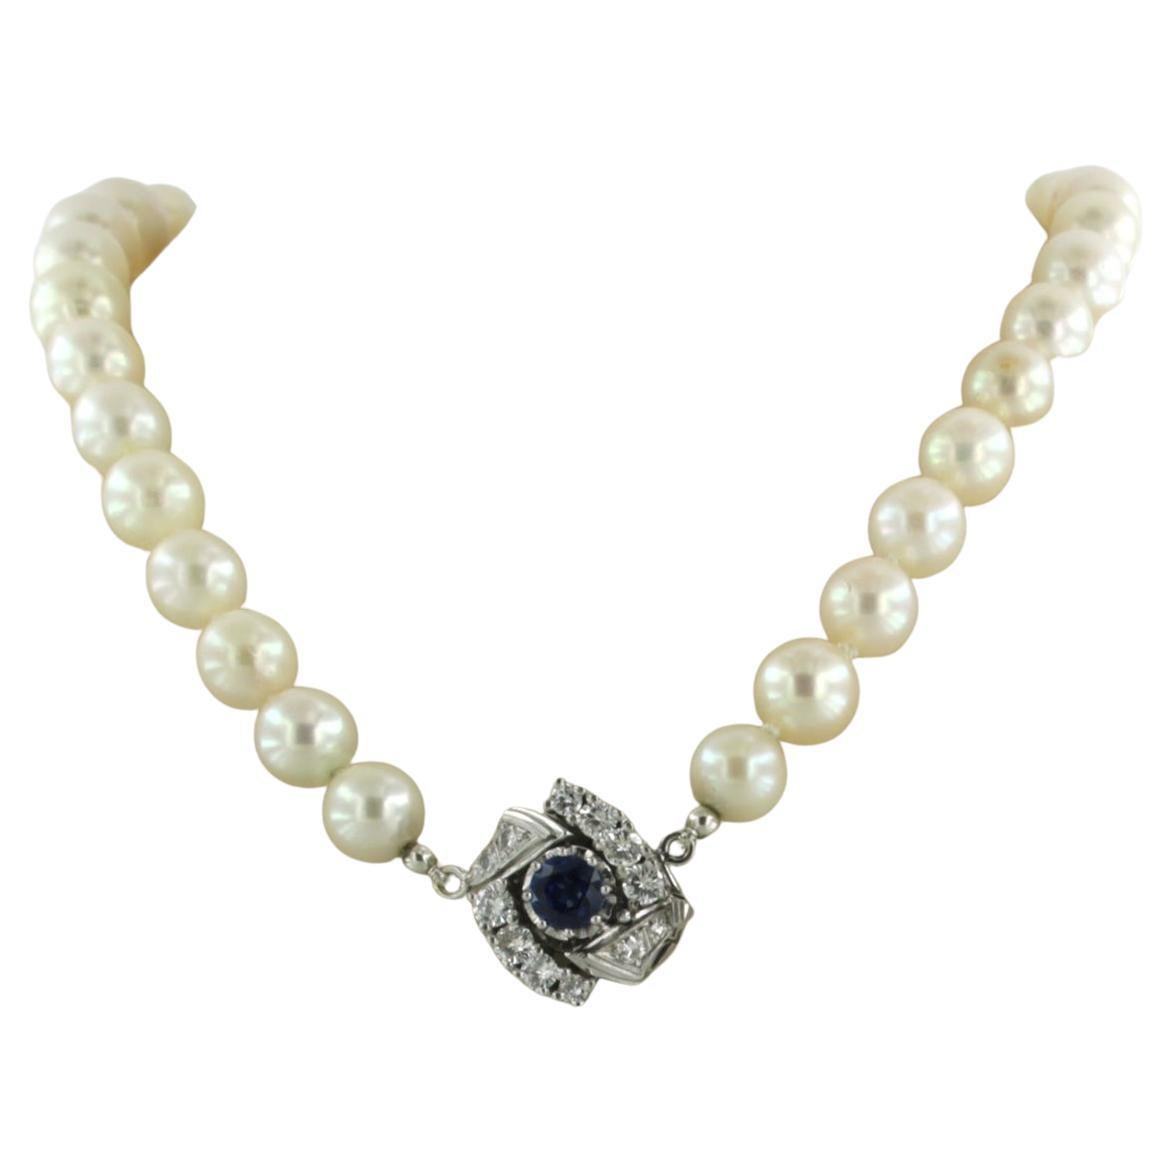 Perlenkette mit 14-karätigem Verschluss, besetzt mit einem Saphir und einem Diamanten im Einzel-/Brillantschliff 0,60 ct - F/G - VS/SI - L 42 cm

ausführliche Beschreibung

Die Länge der Halskette ist 42 cm lang

die Größe des Schlosses beträgt 1,6